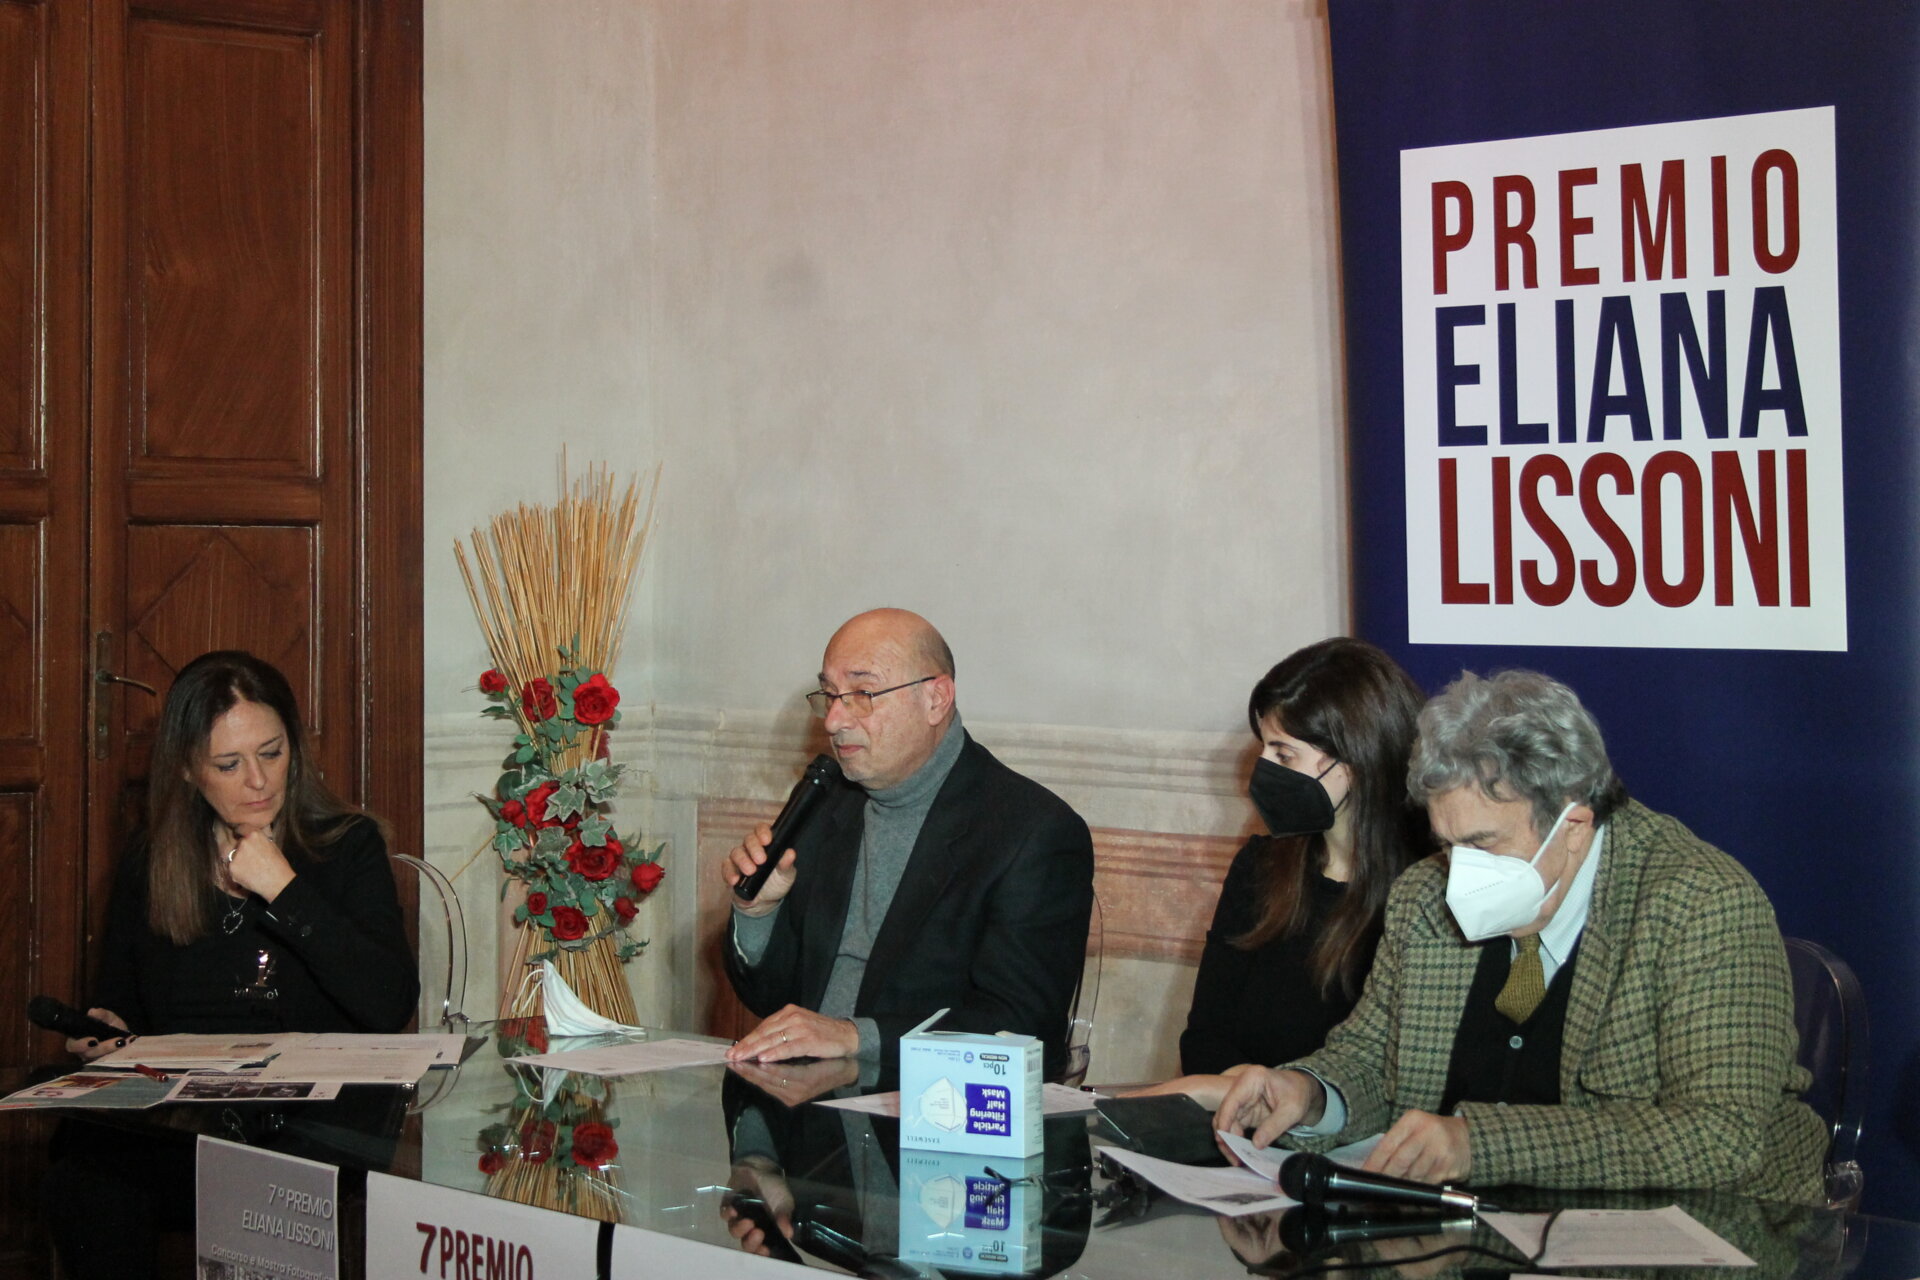 Nova Milanese, VII Edizione del Premio Eliana Lissoni